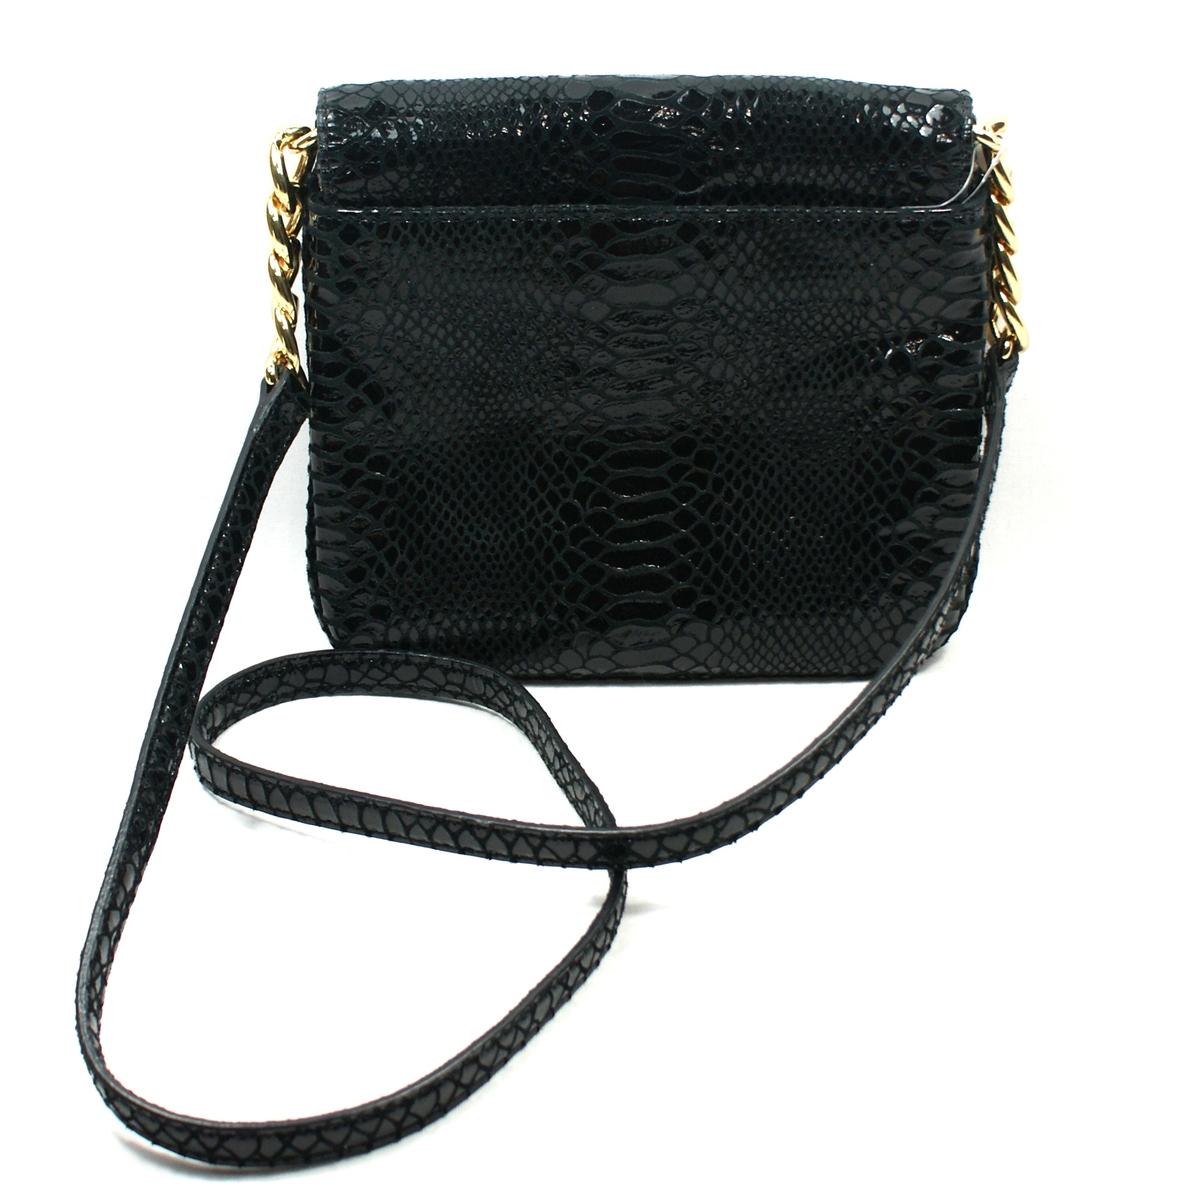 Michael Kors Berkley Black Genuine Leather Crossbody Bag #32S2GBKC1G | Michael Kors 32S2GBKC1G